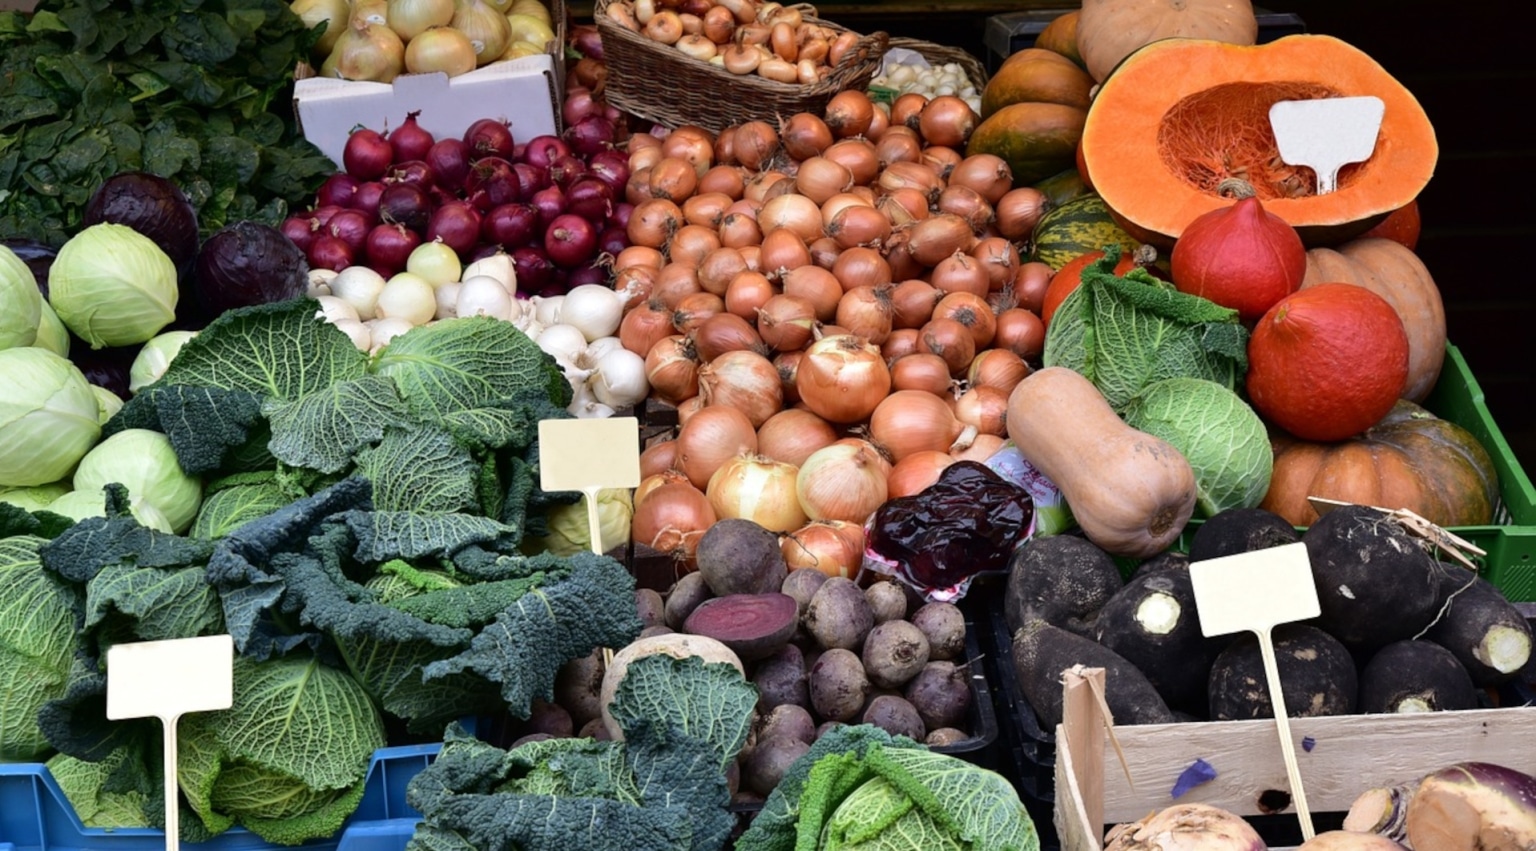 Gemüse Markt